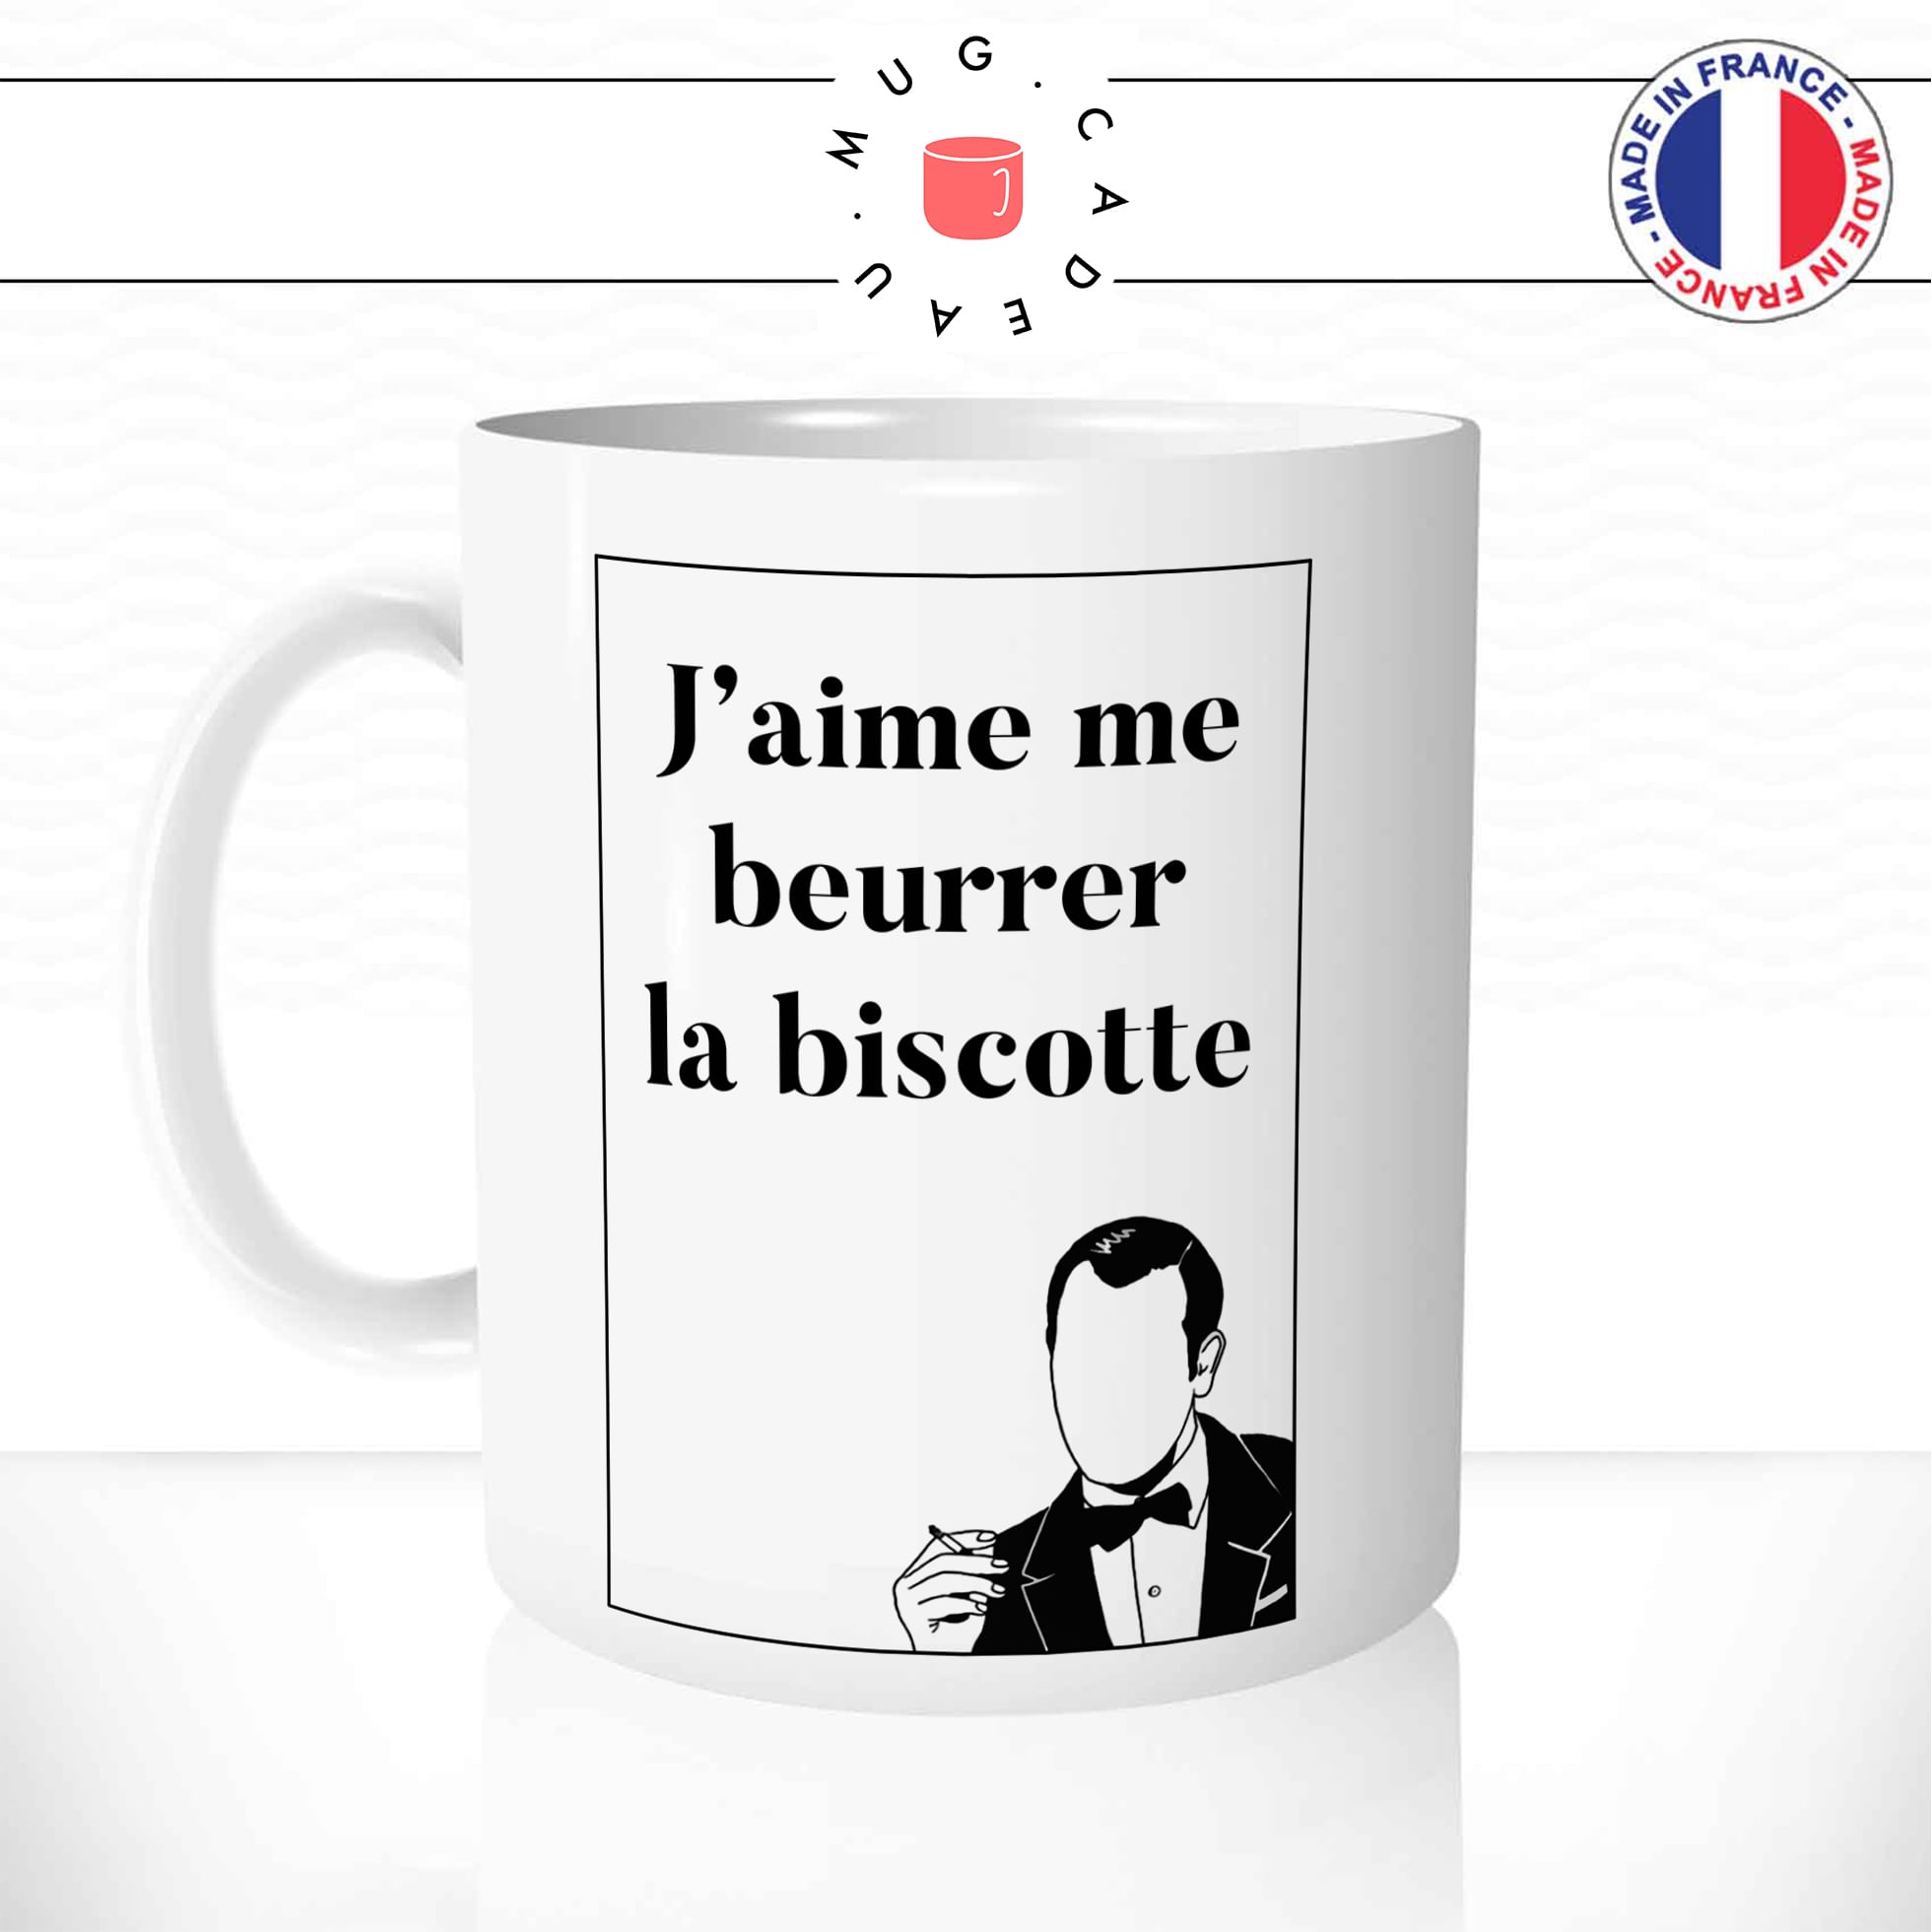 mug-tasse-j'aime-me-beurrer-la-biscotte-oss177-hubert-bonnisseur-batte-film-francais-drole-fun-idée-cadeau-original-café-thé-personnalisée-min